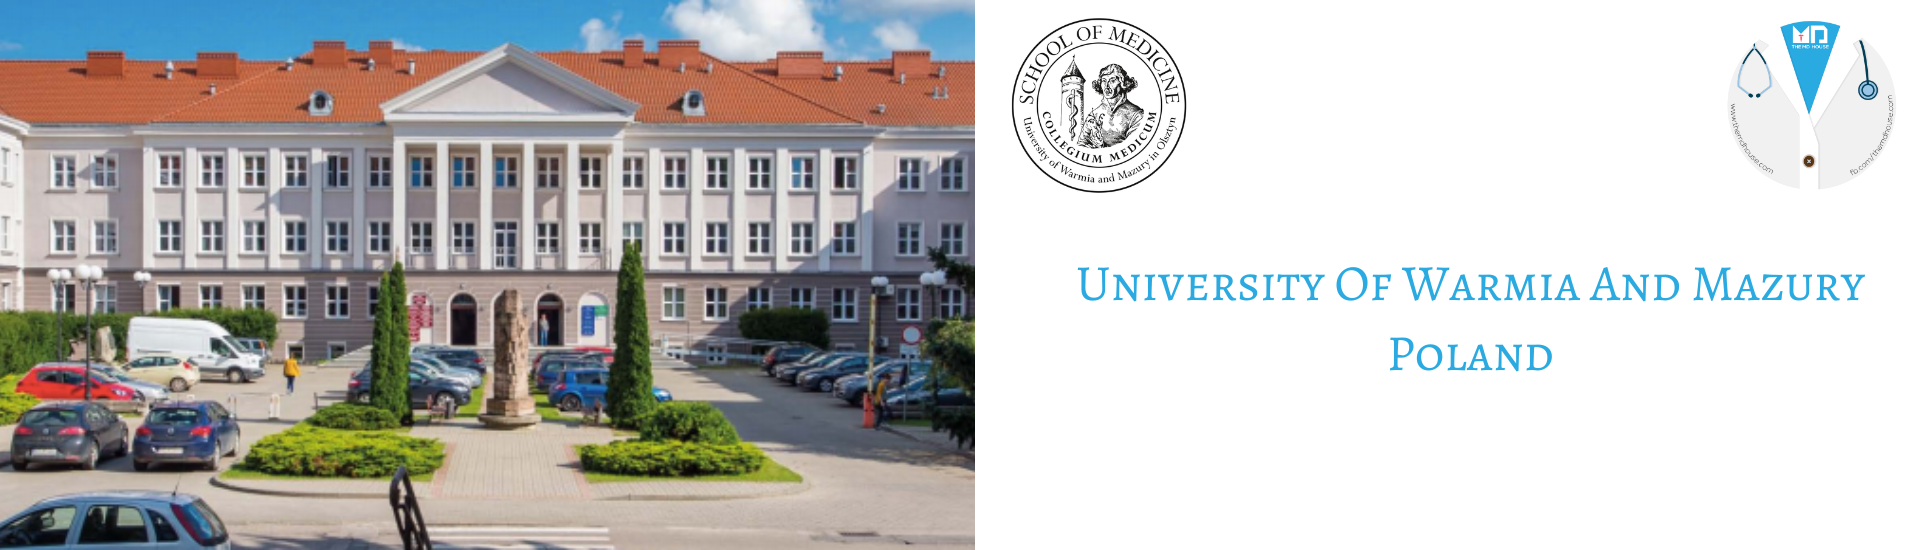 University Of Warmia and Mazury in Olsztyn